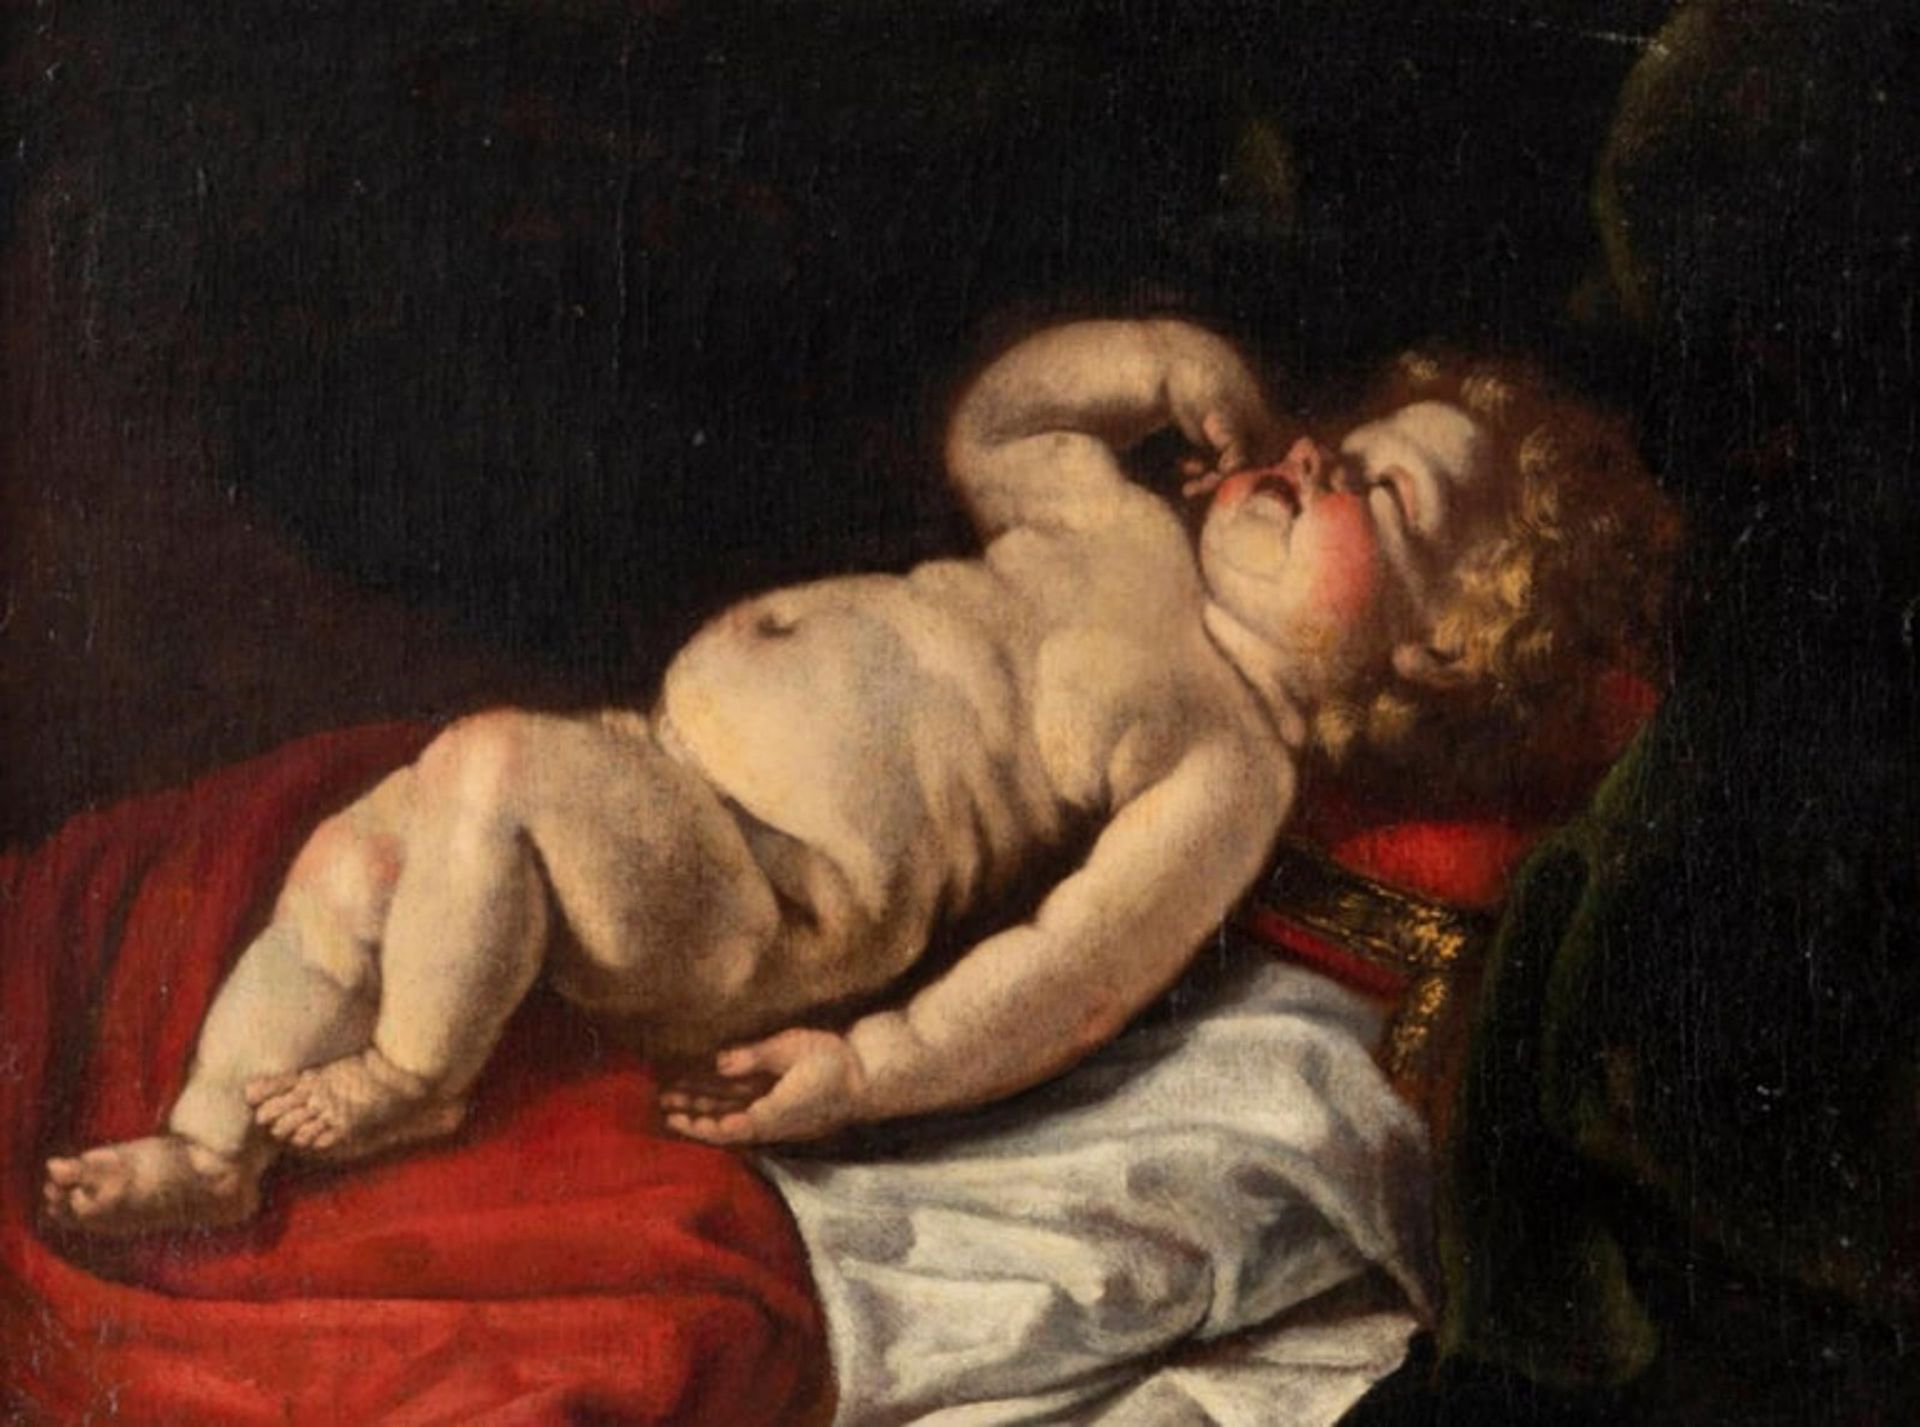 Luigi Miradori, Italy, around 1600 - around 1657 "Infant Jesus Asleep" 17th century - Image 2 of 3